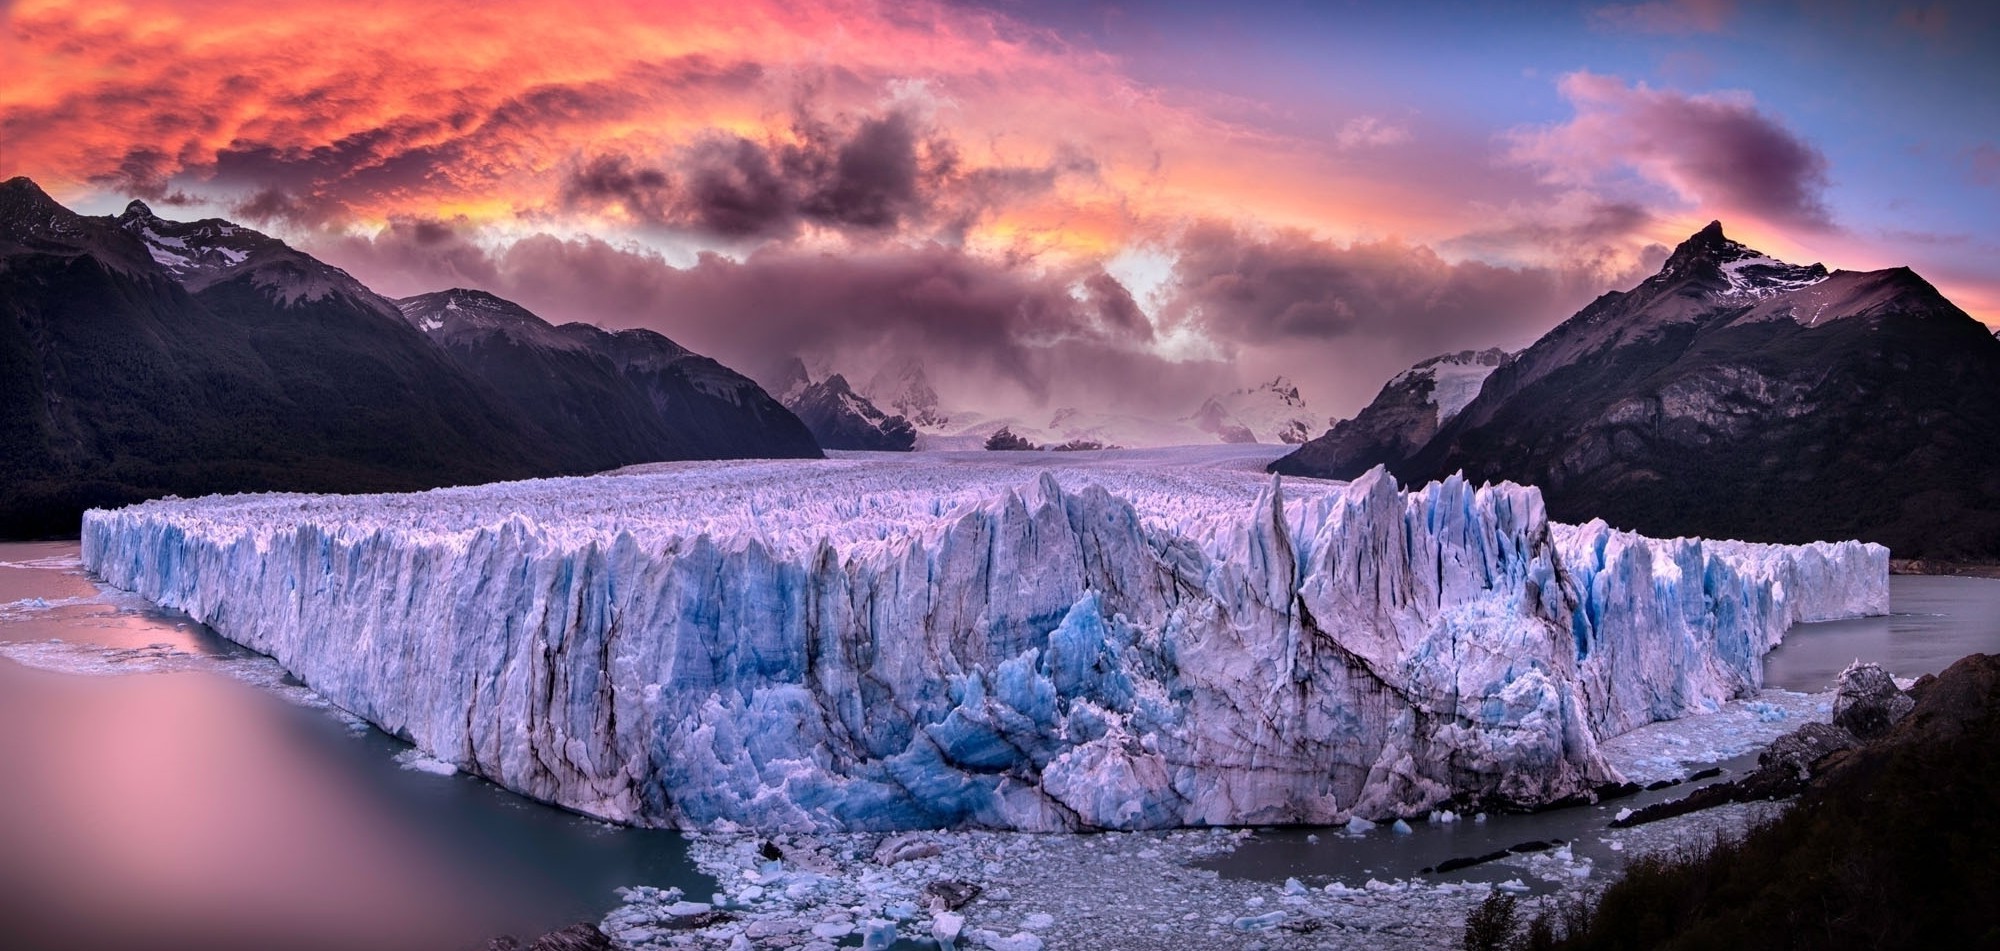 glaciers, Perito Moreno, Argentina, Sunset, Sea, Mountain, Clouds, Snowy Peak, Nature, Landscape Wallpaper